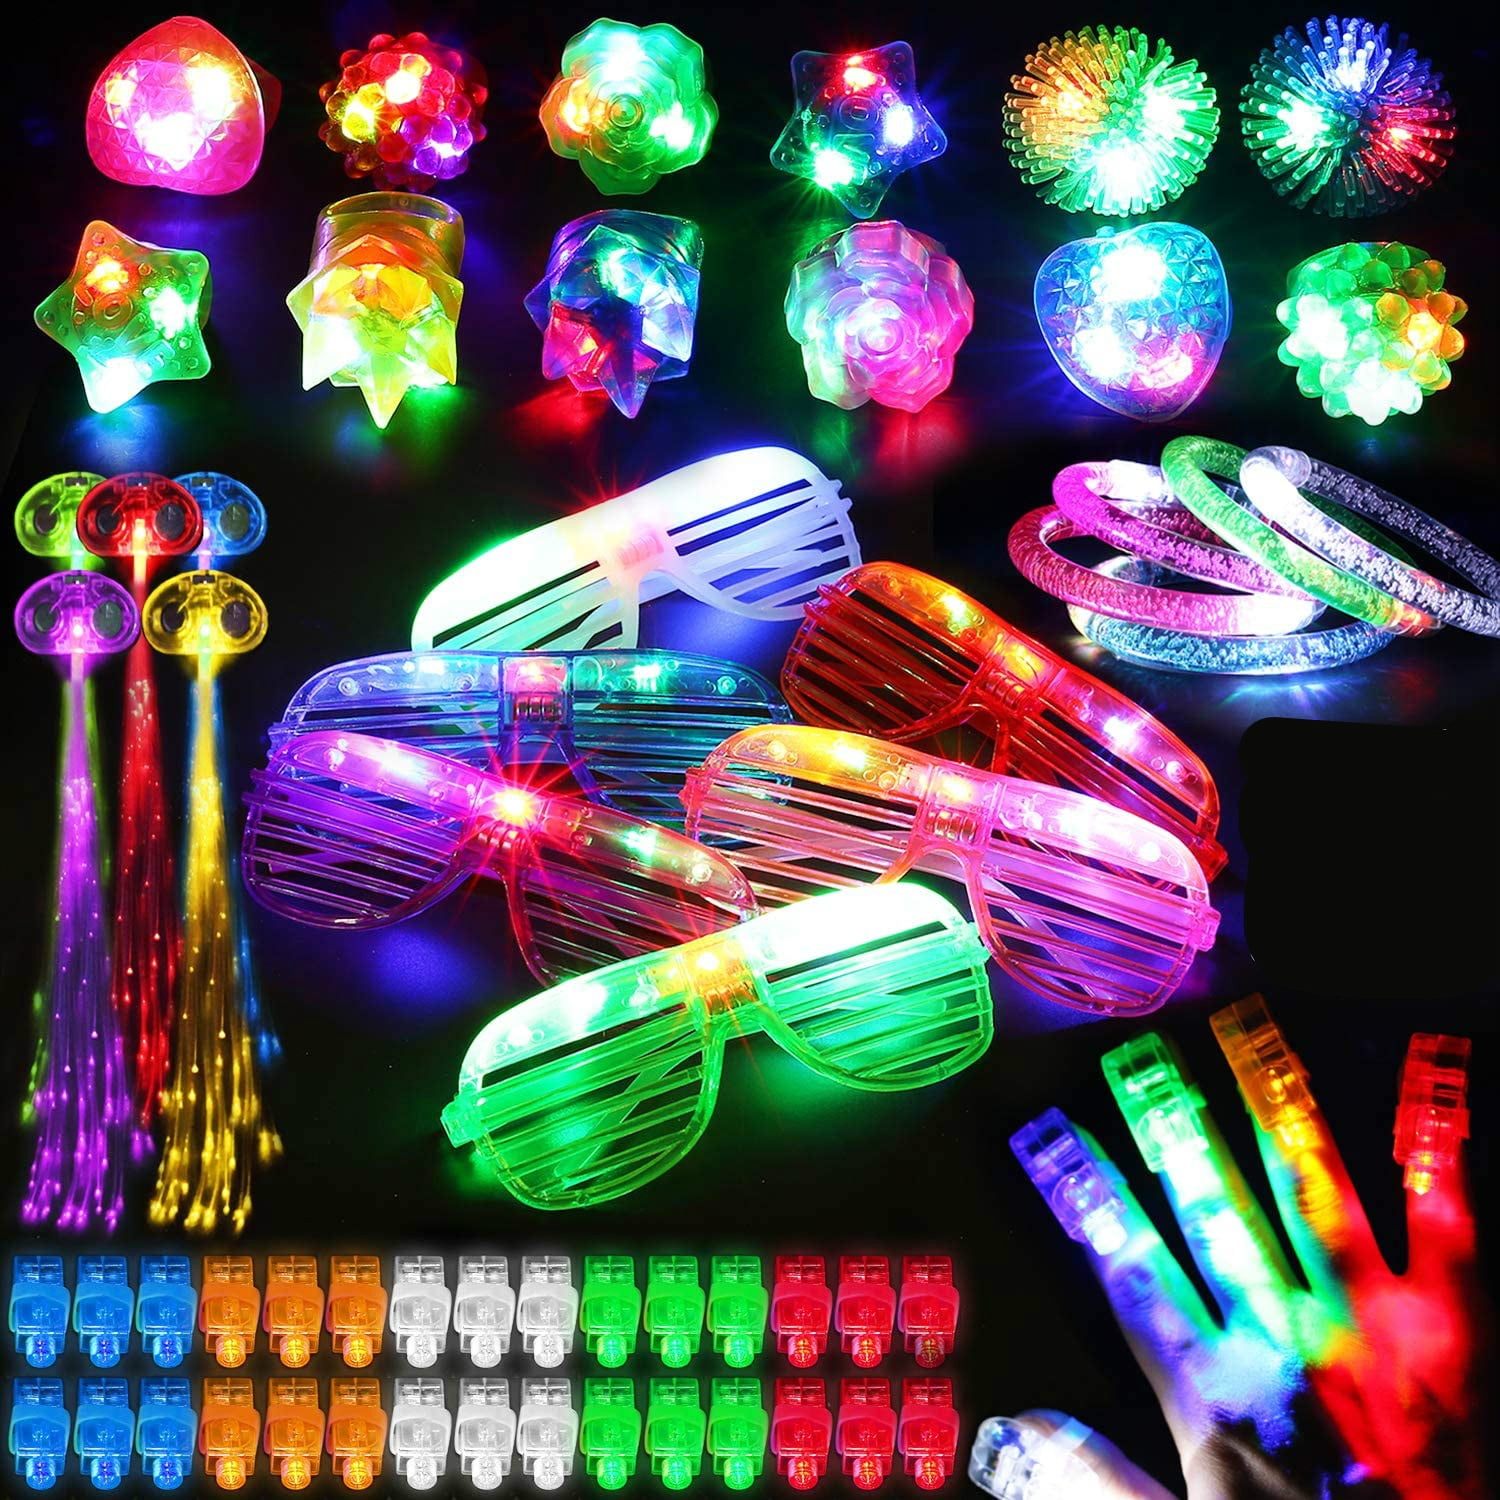 LED Light up Toy Party Favors 78 Pack Neon Party Supplies Bulk for Adult  Kids Birthday Halloween - 50 Finger Light, 12 Jelly Ring, 6 Glasses, 5  Bracelet, 5 Hair Light 